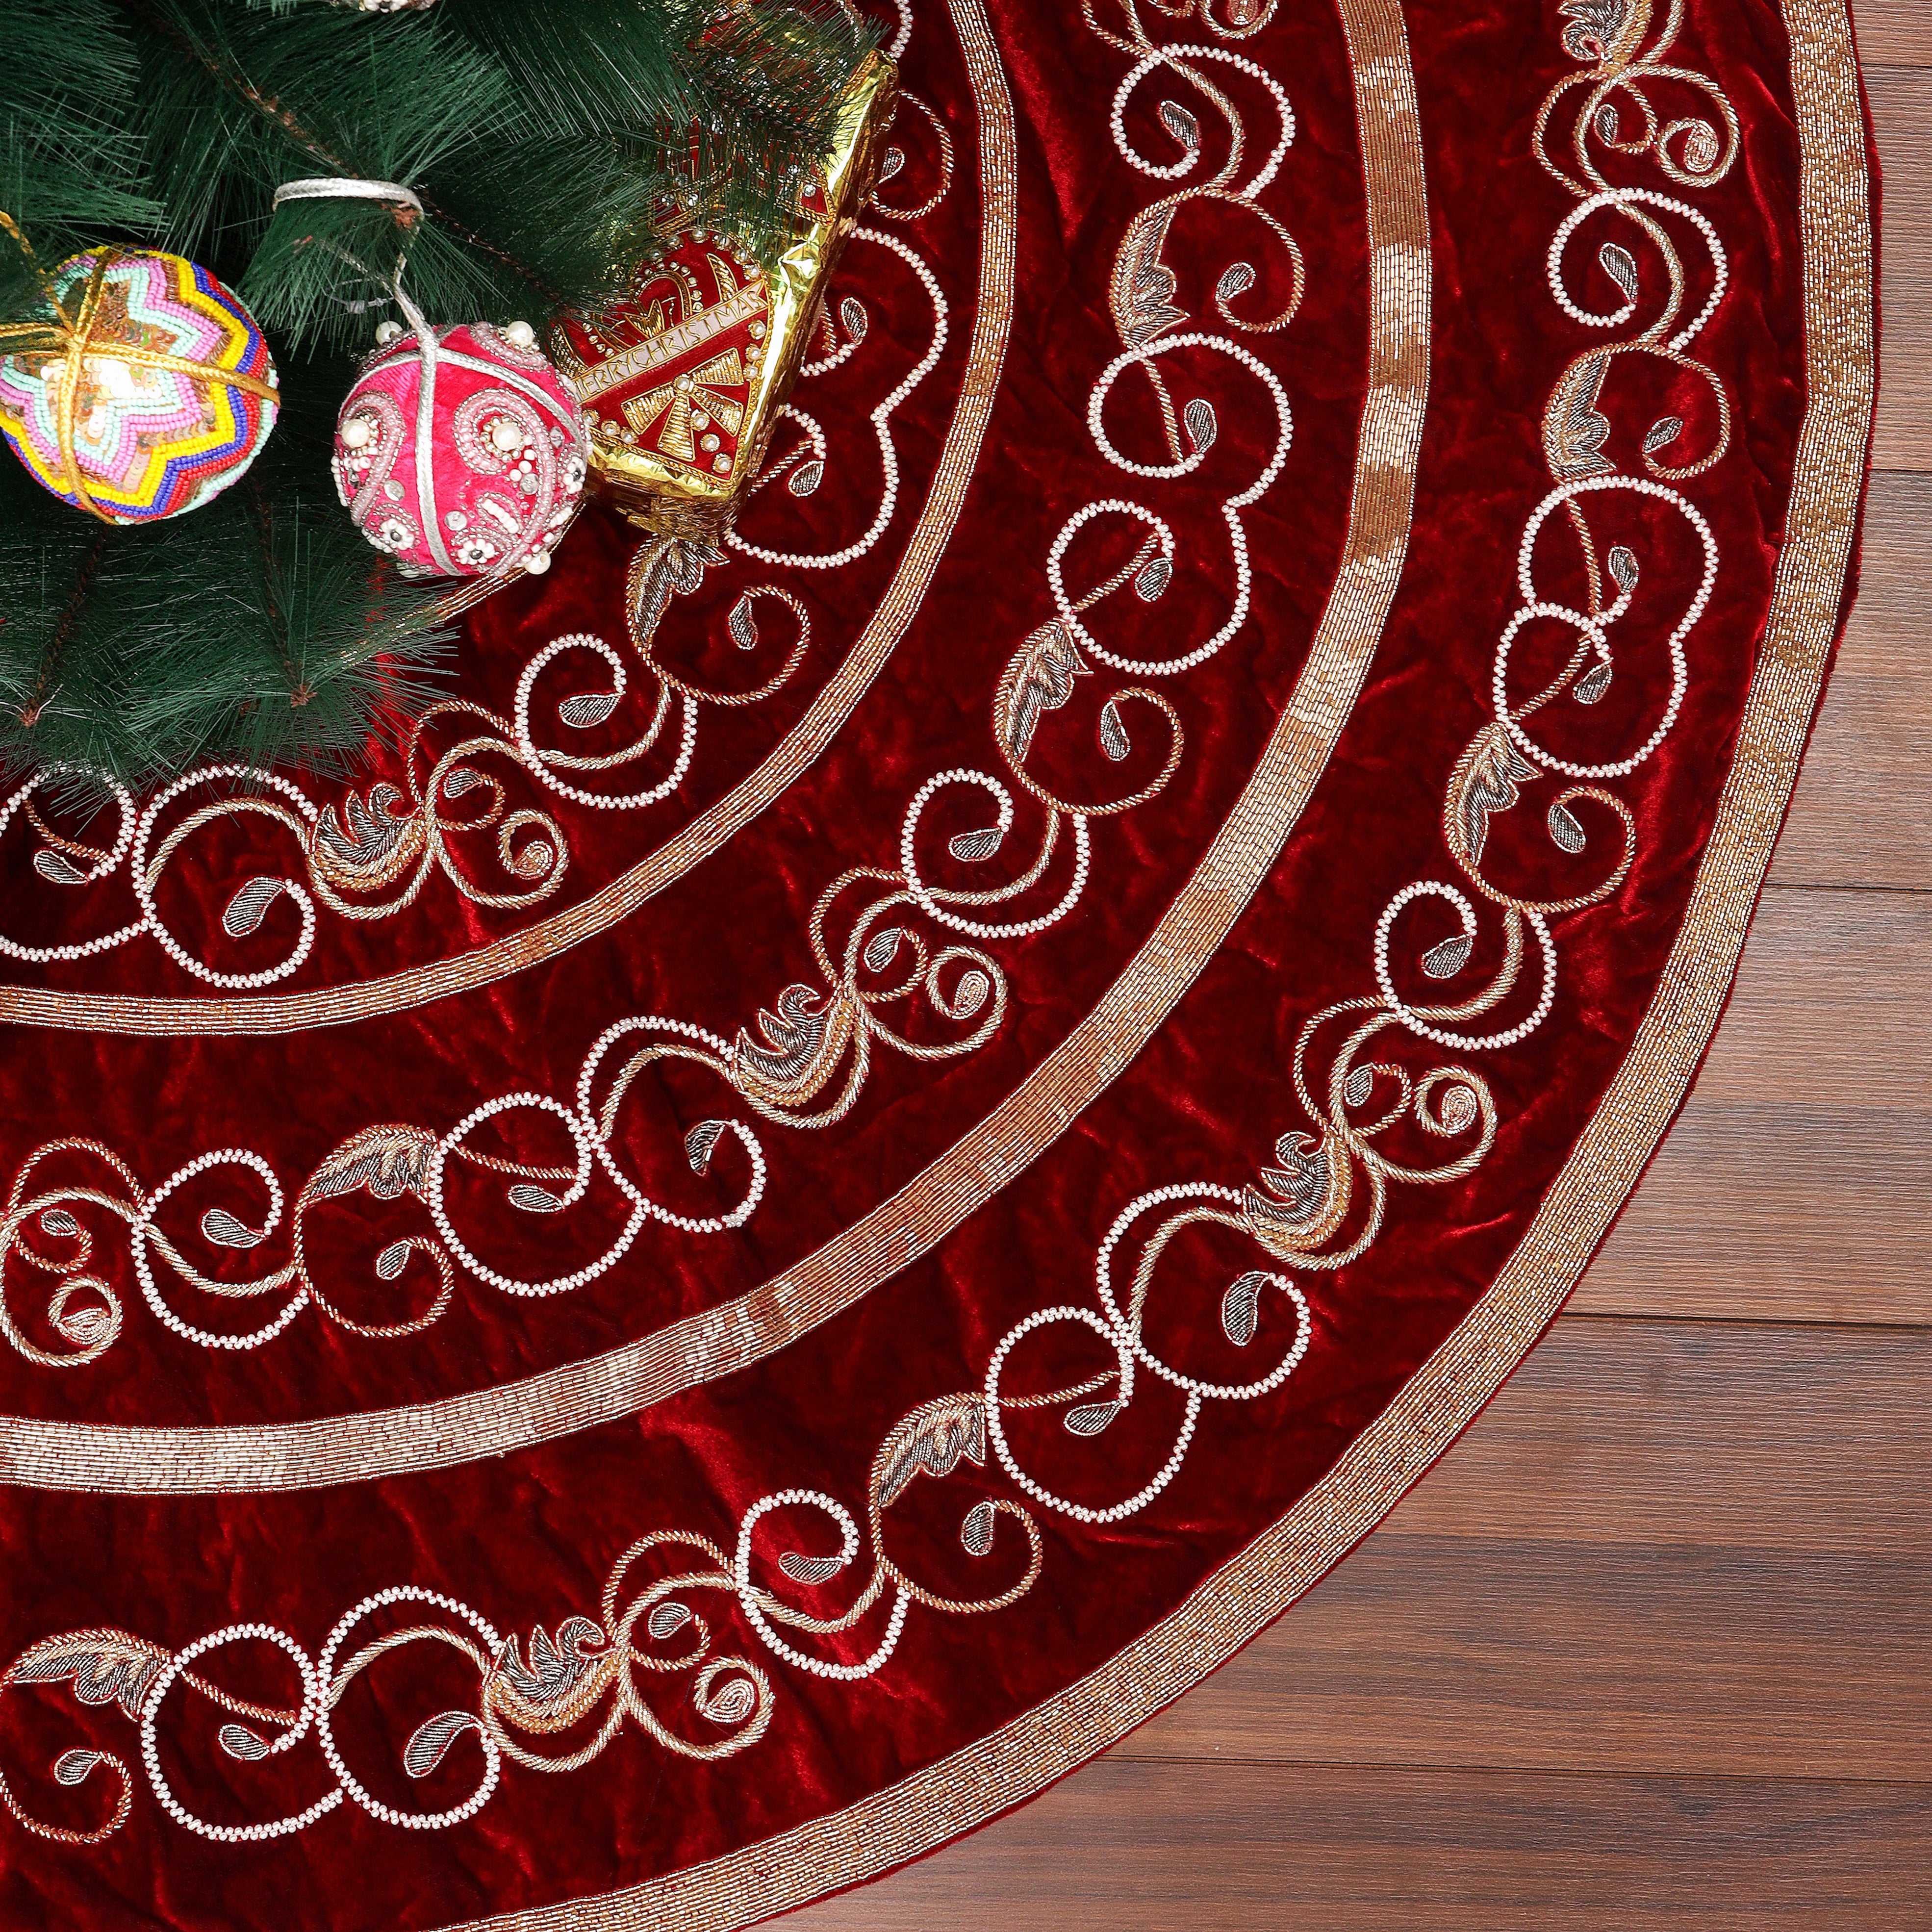 Swirl Charm - Red Velvet Christmas Tree Skirt